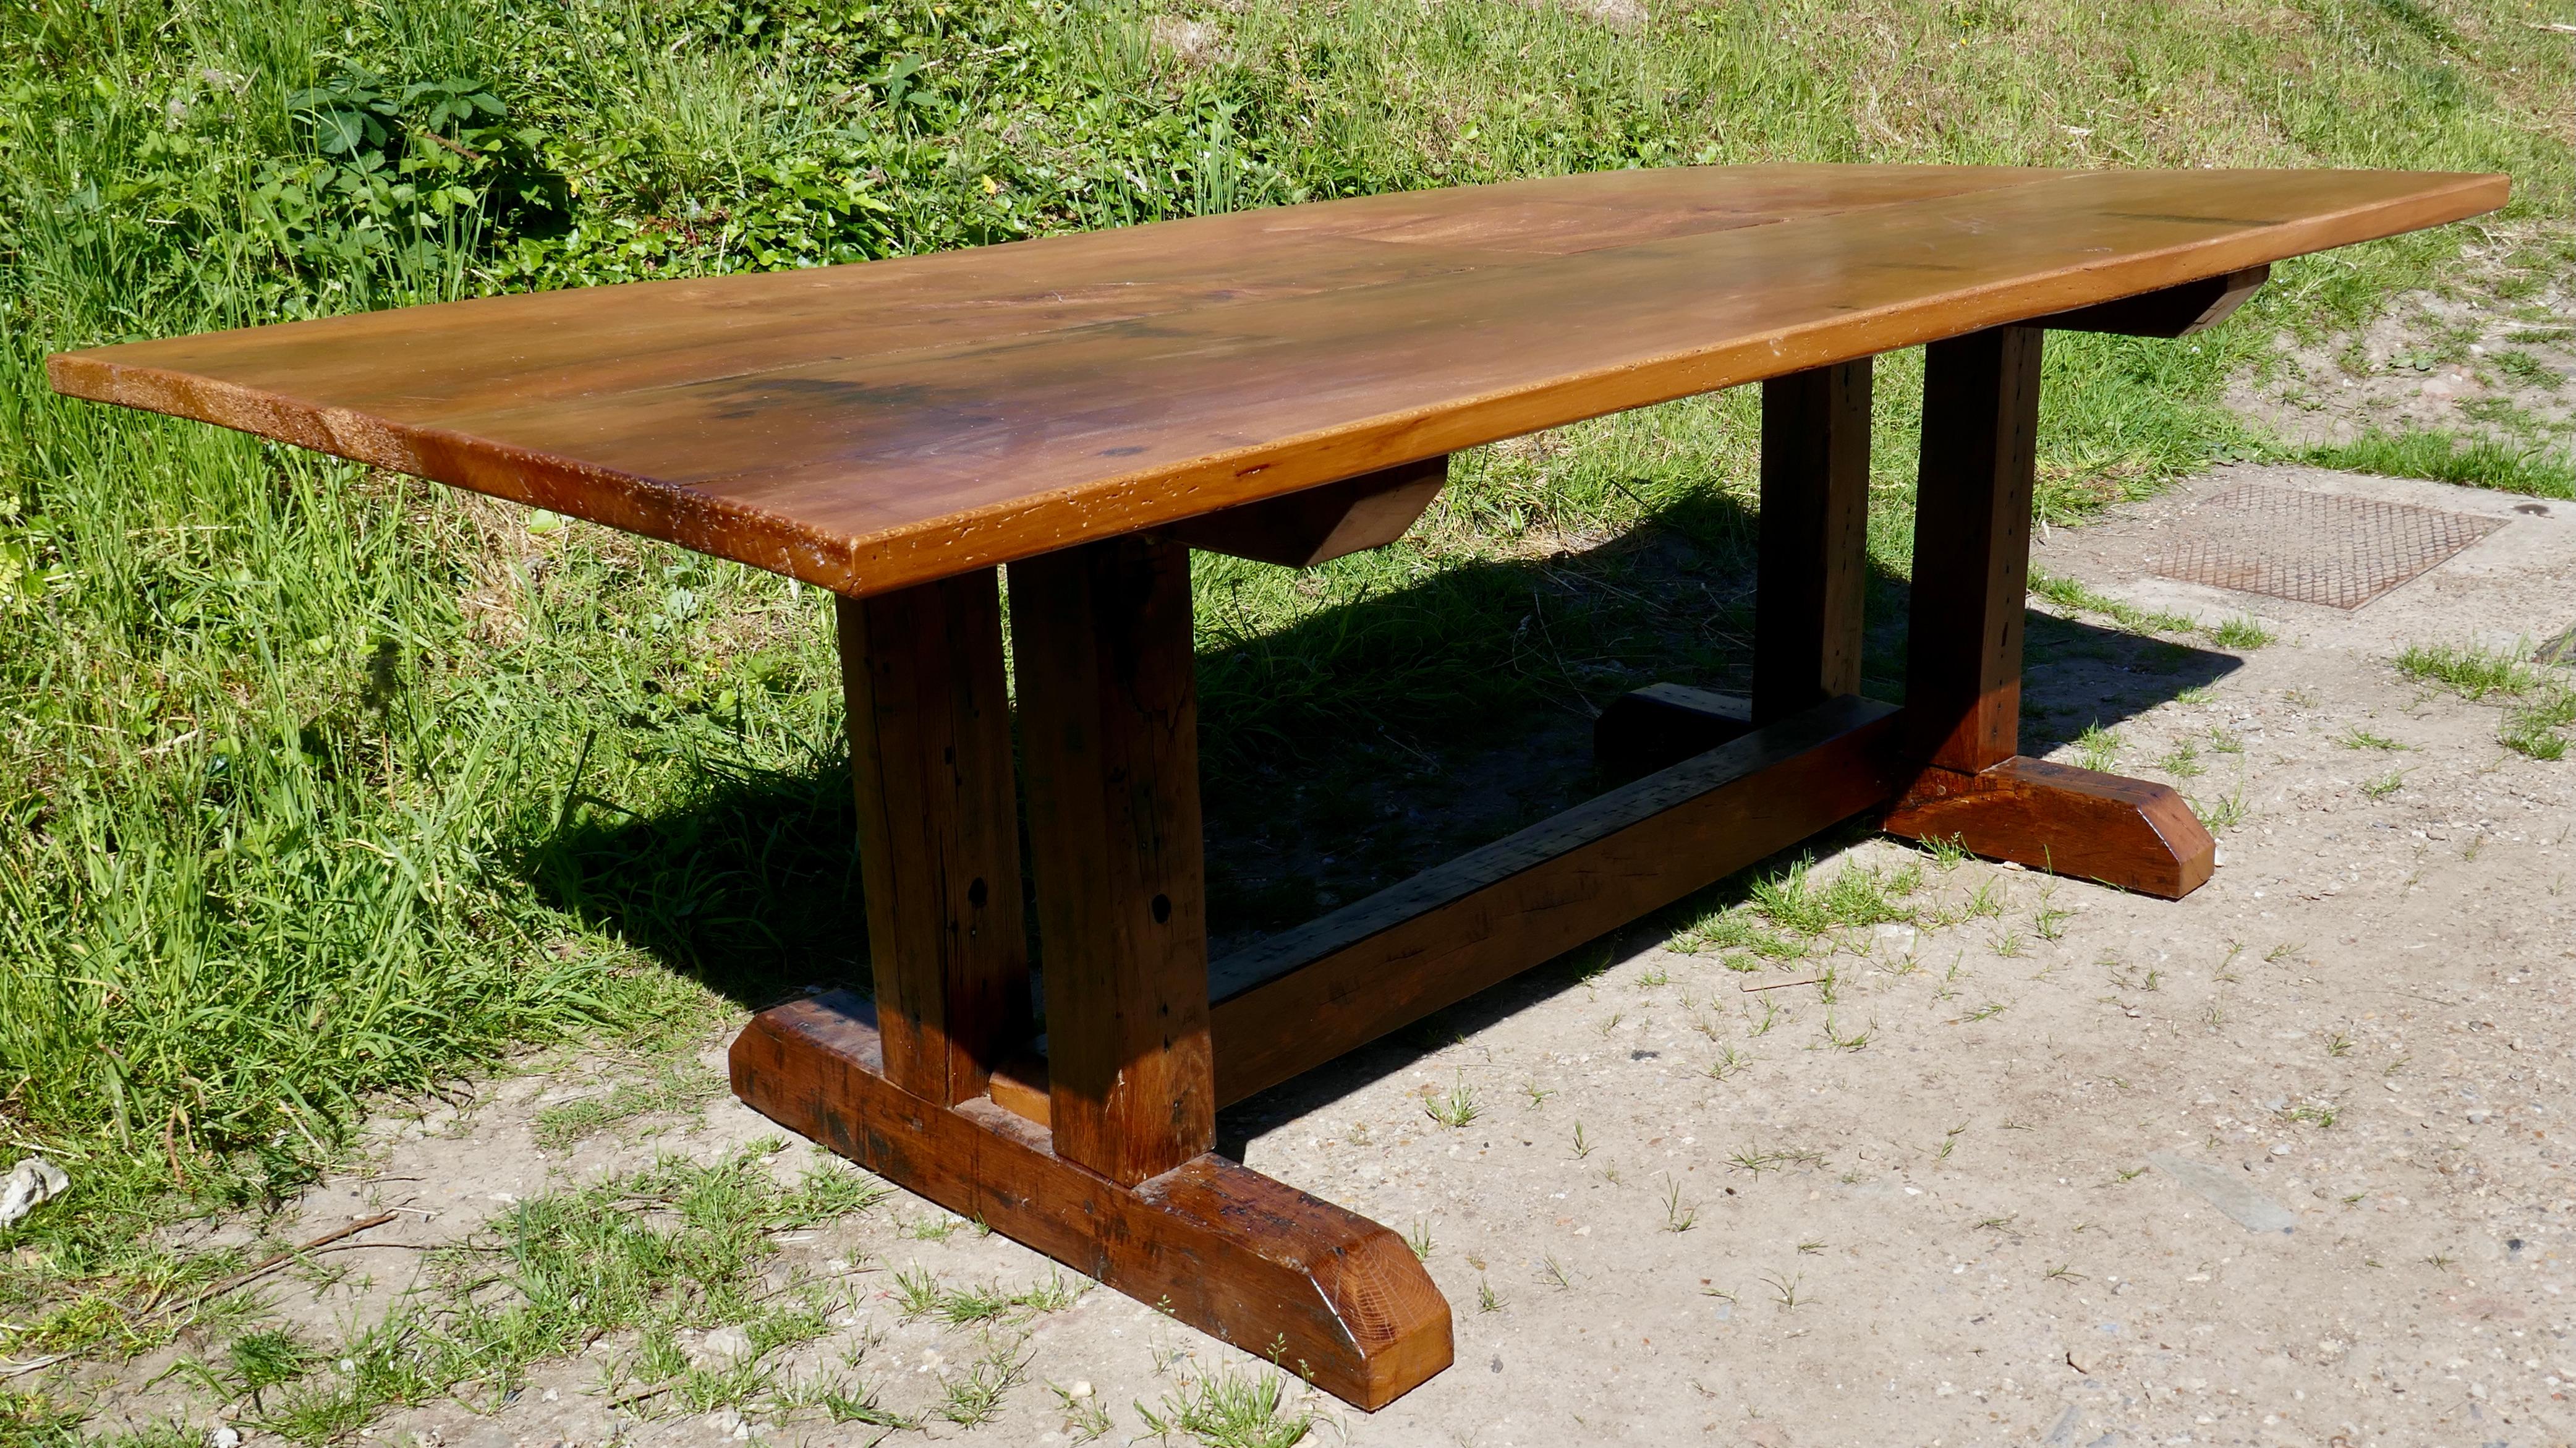 Rustikaler englischer Scheunentisch aus aufgearbeiteter Ulme  

Dies ist ein hervorragendes Stück, die Tischplatte ist dick und aus 2 schweren Brettern aus massivem Ulmenholz gefertigt, das Holz hat ein rustikales Aussehen mit natürlichen Knorren